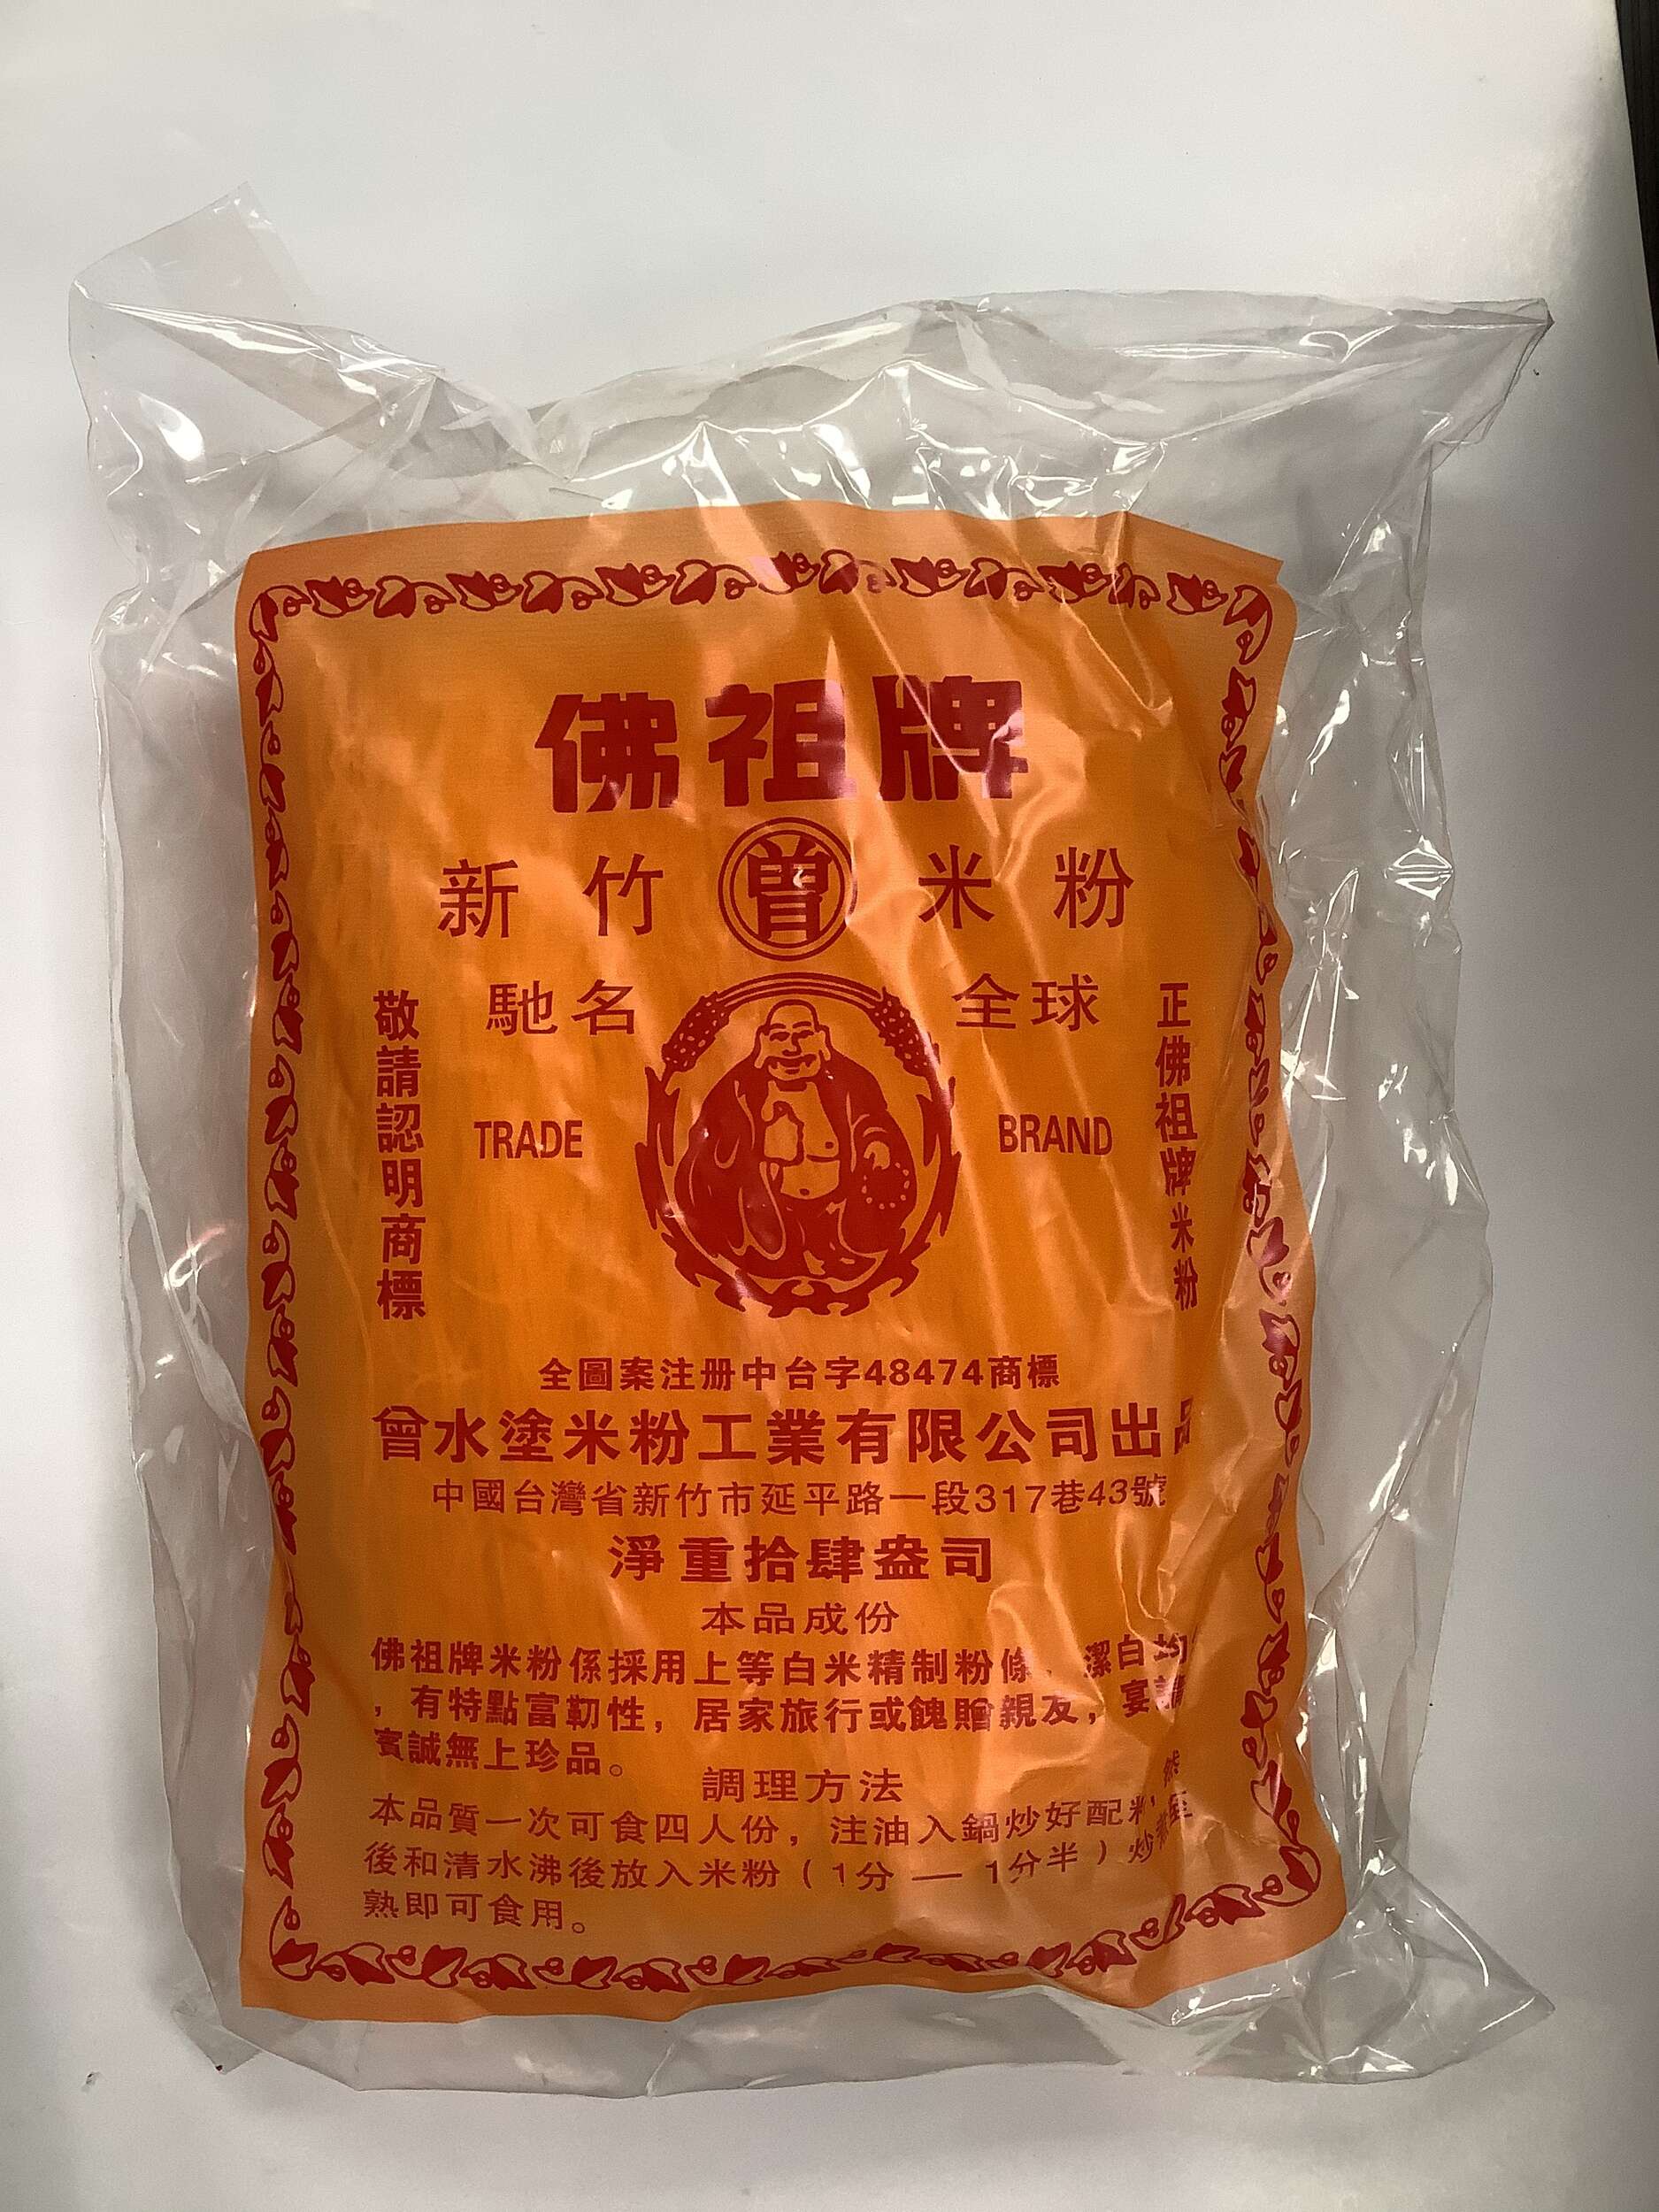 Famous Buddha Brand Rice Stick - 14 oz - 0